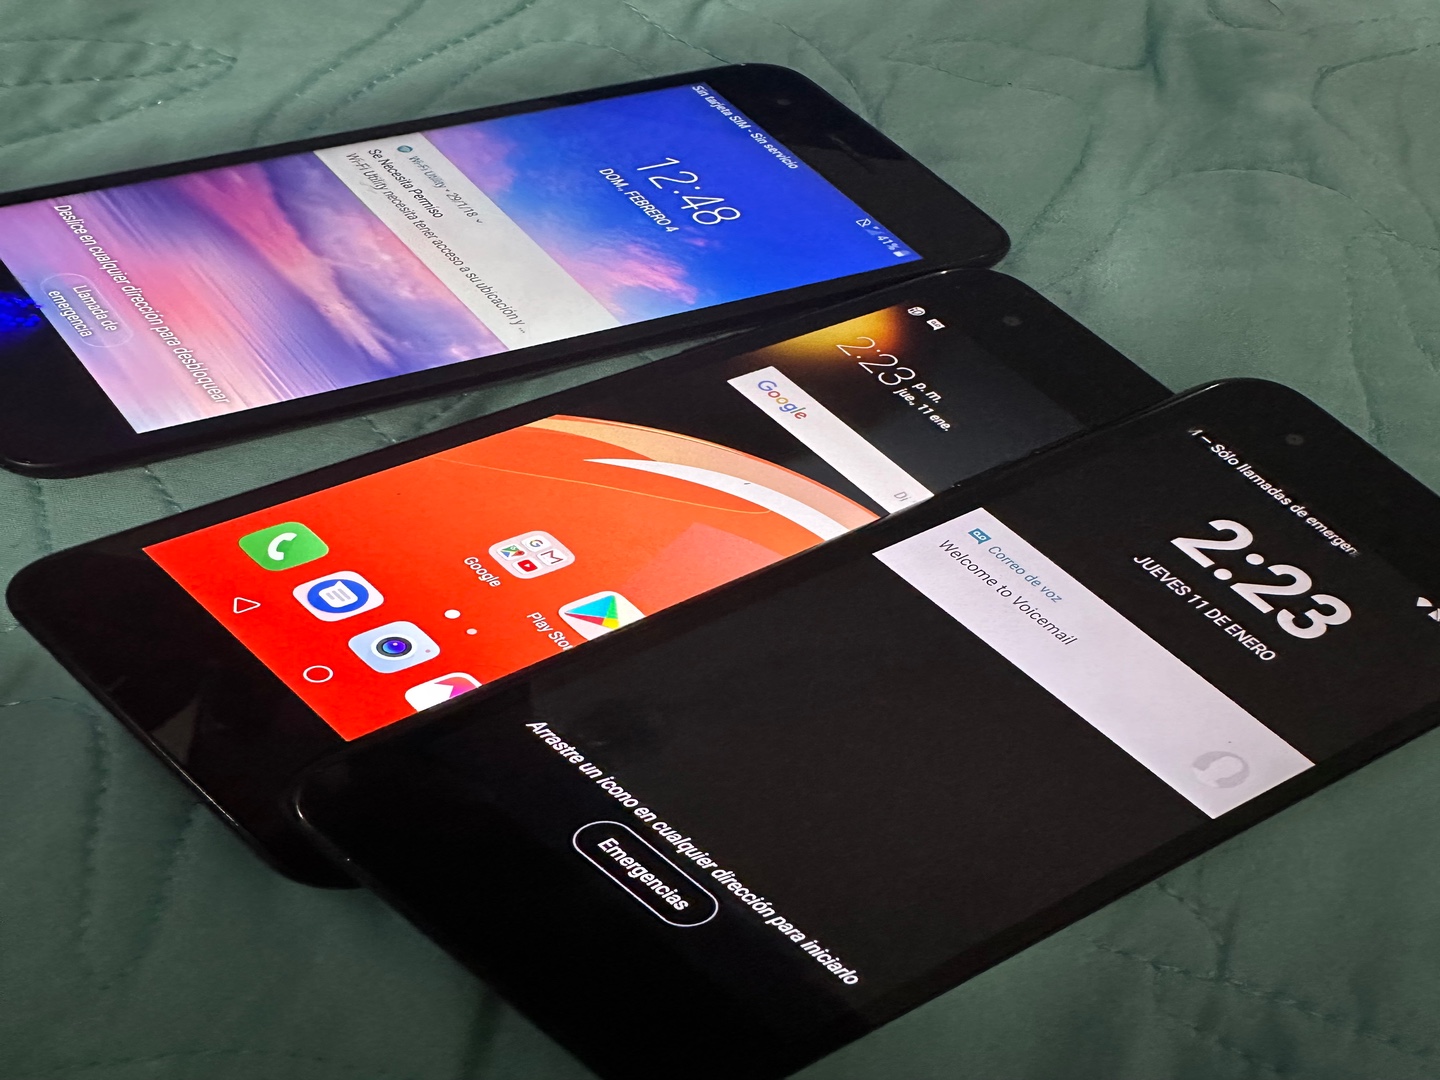 celulares y tabletas - LG SP 200 16 Gb solo interesado bloqueado de compañía 3 disponible como nuevoo
